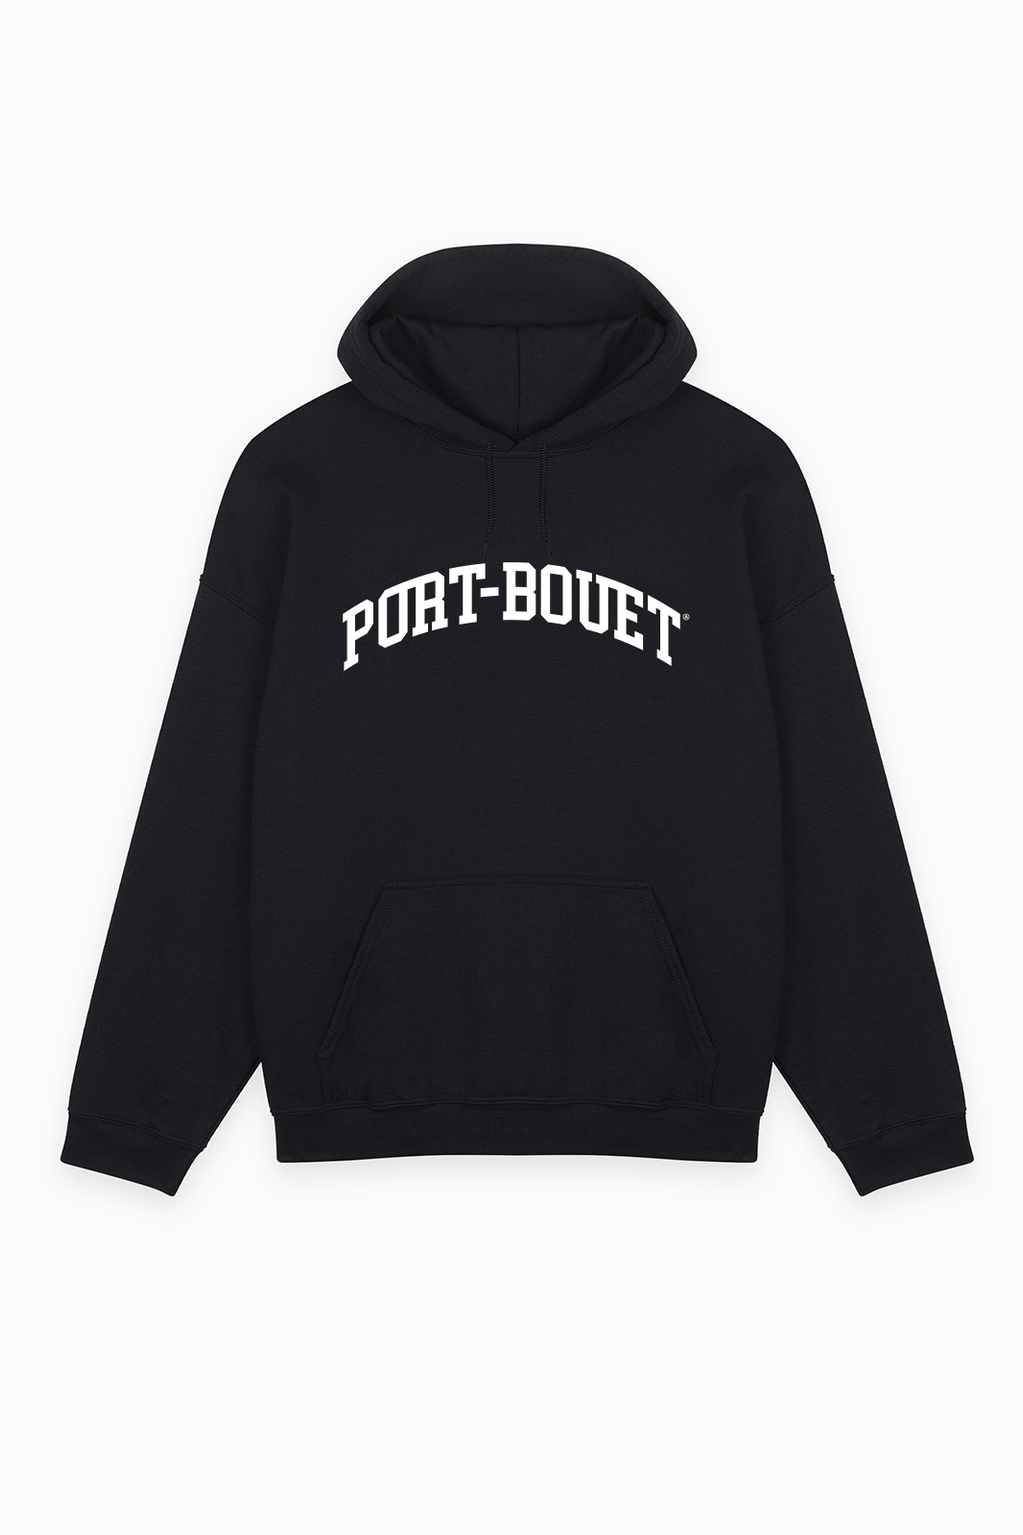 Port-Bouet Hoodie Black